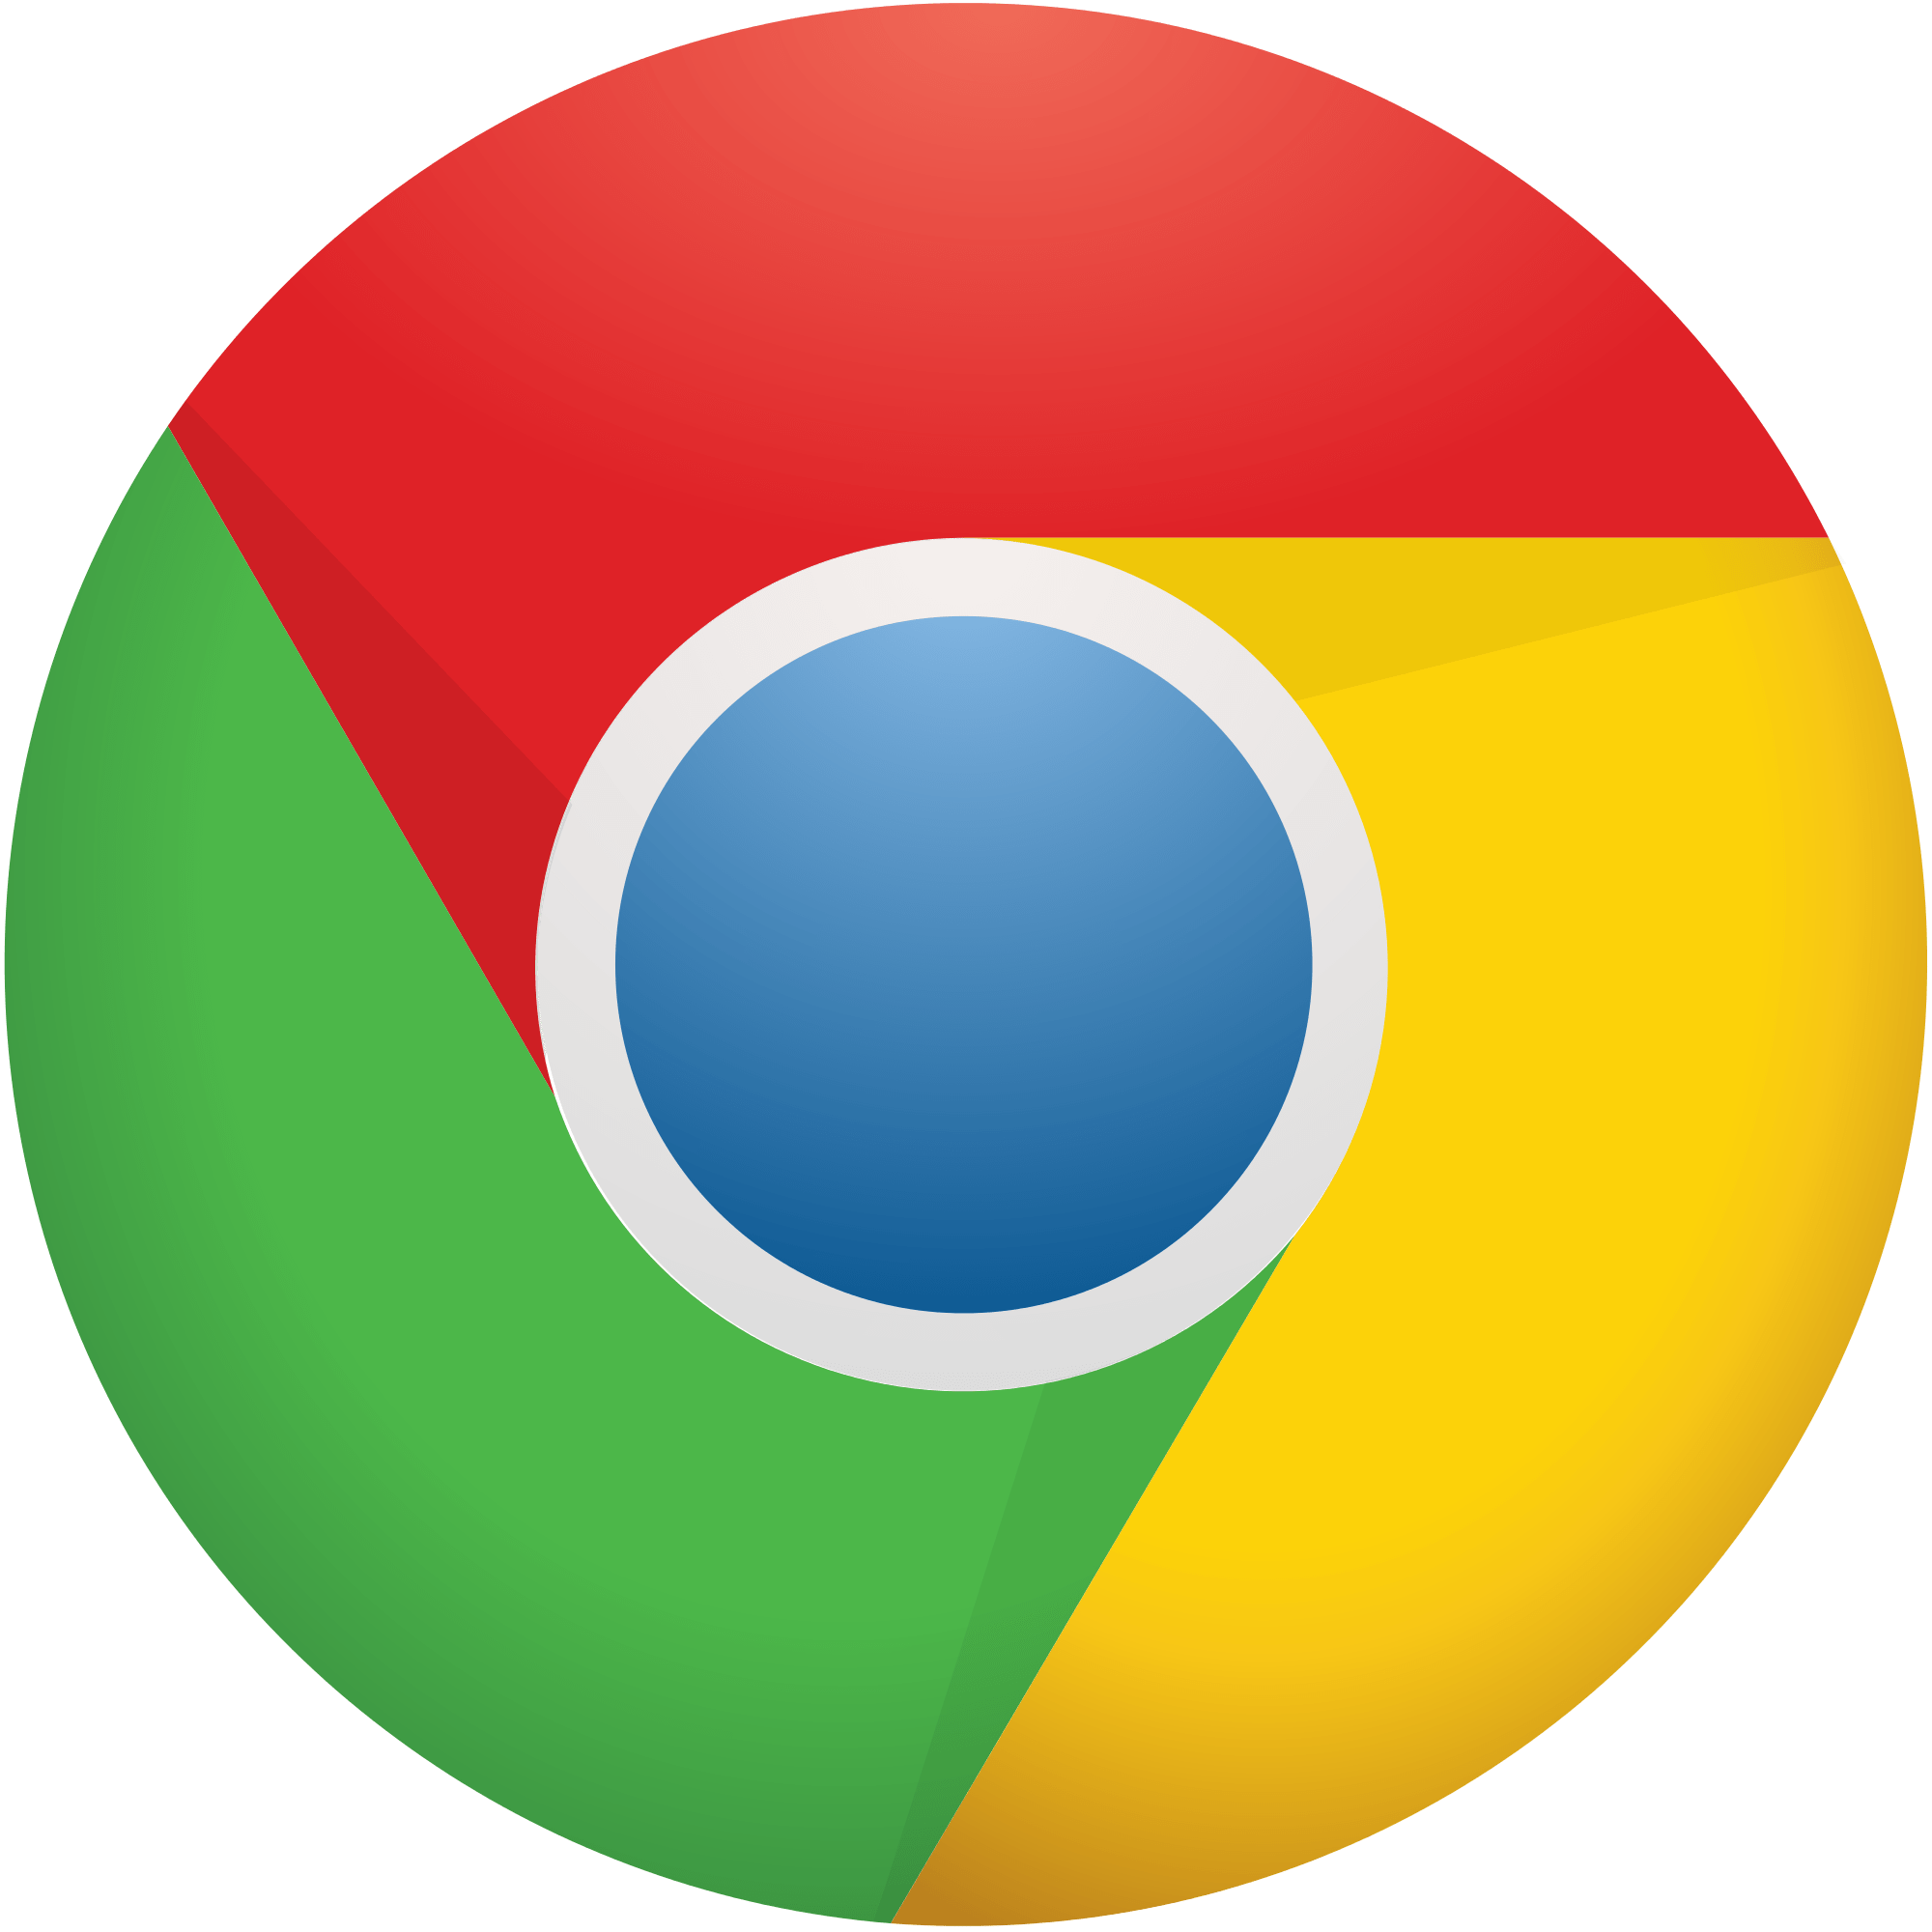 new google chrome logo vector